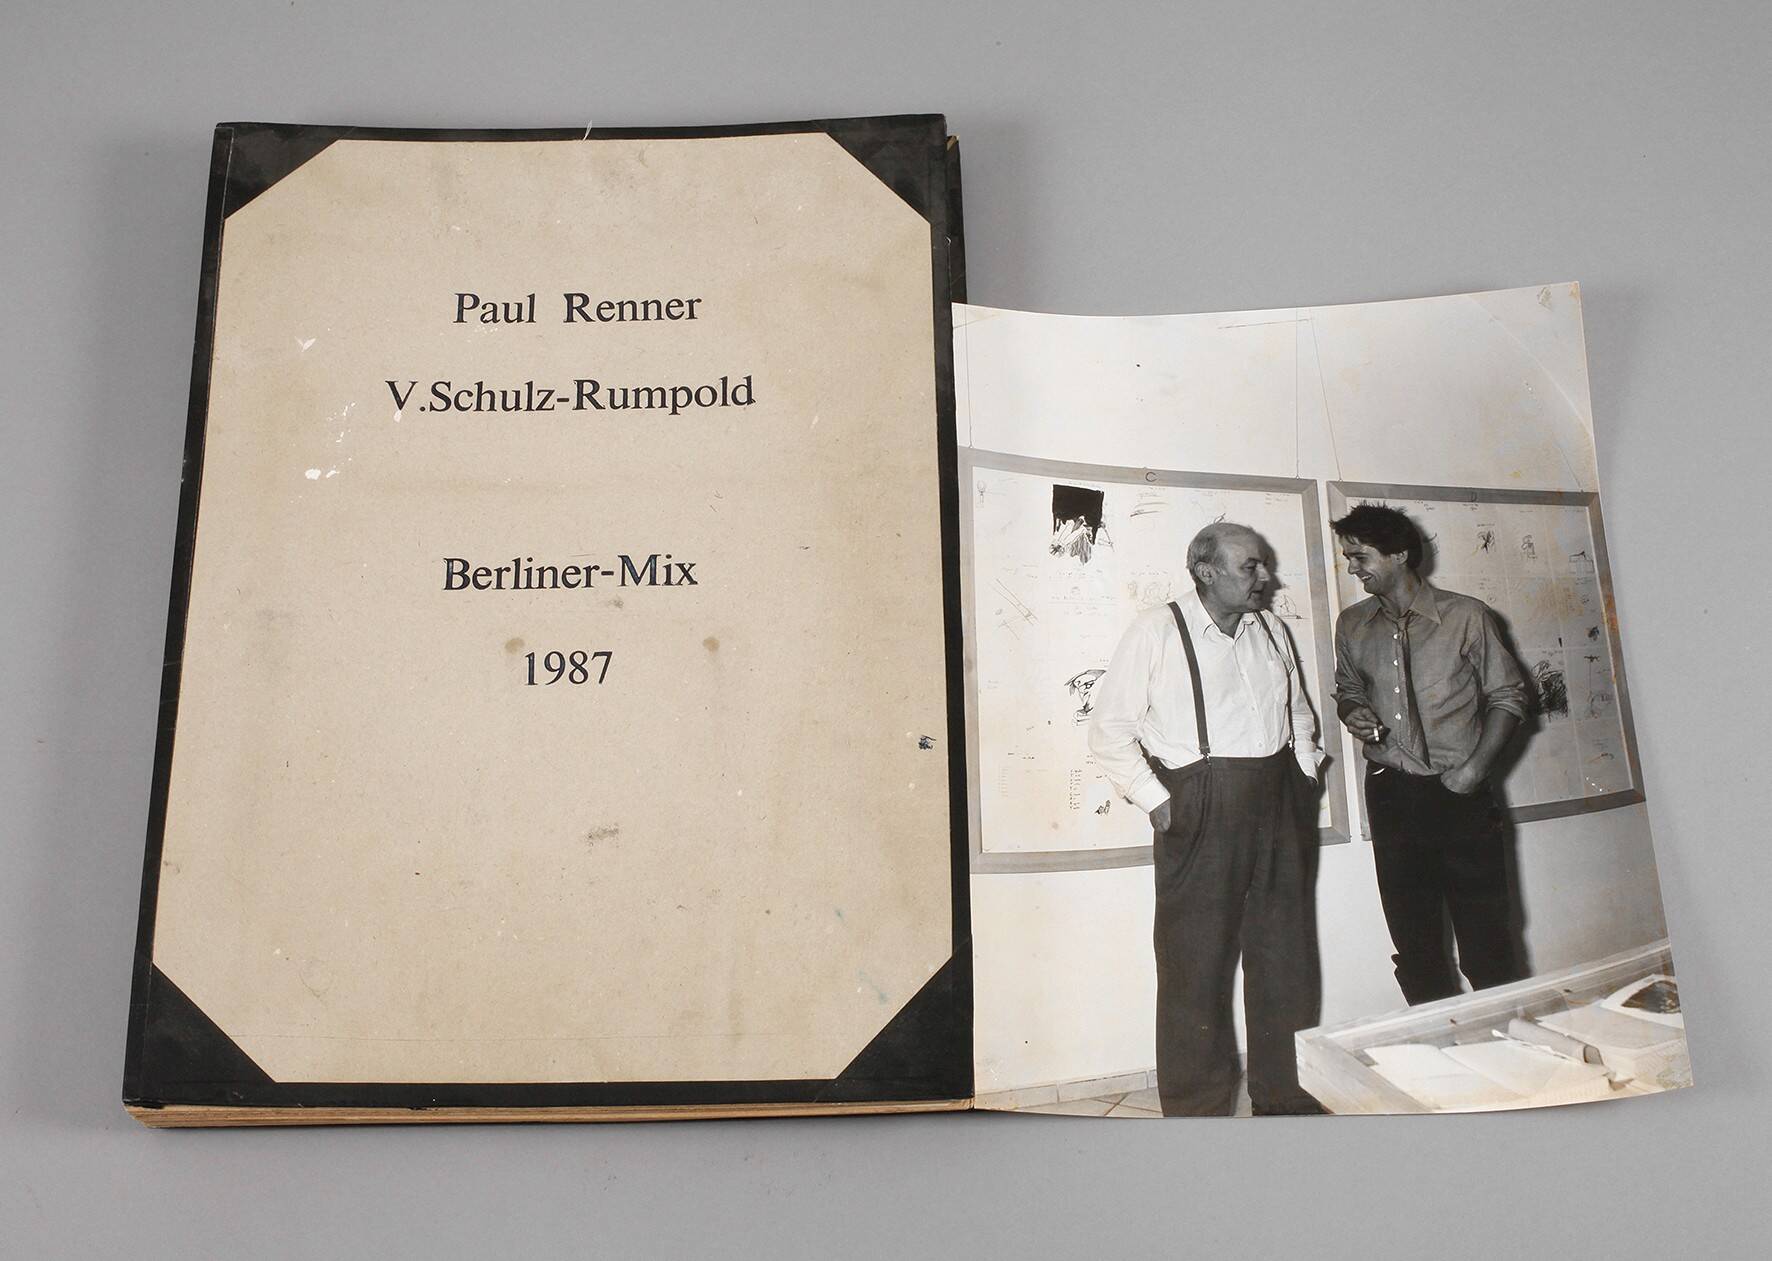 P. Renner und V. Schulz-Rumpold, "Berliner Mix"